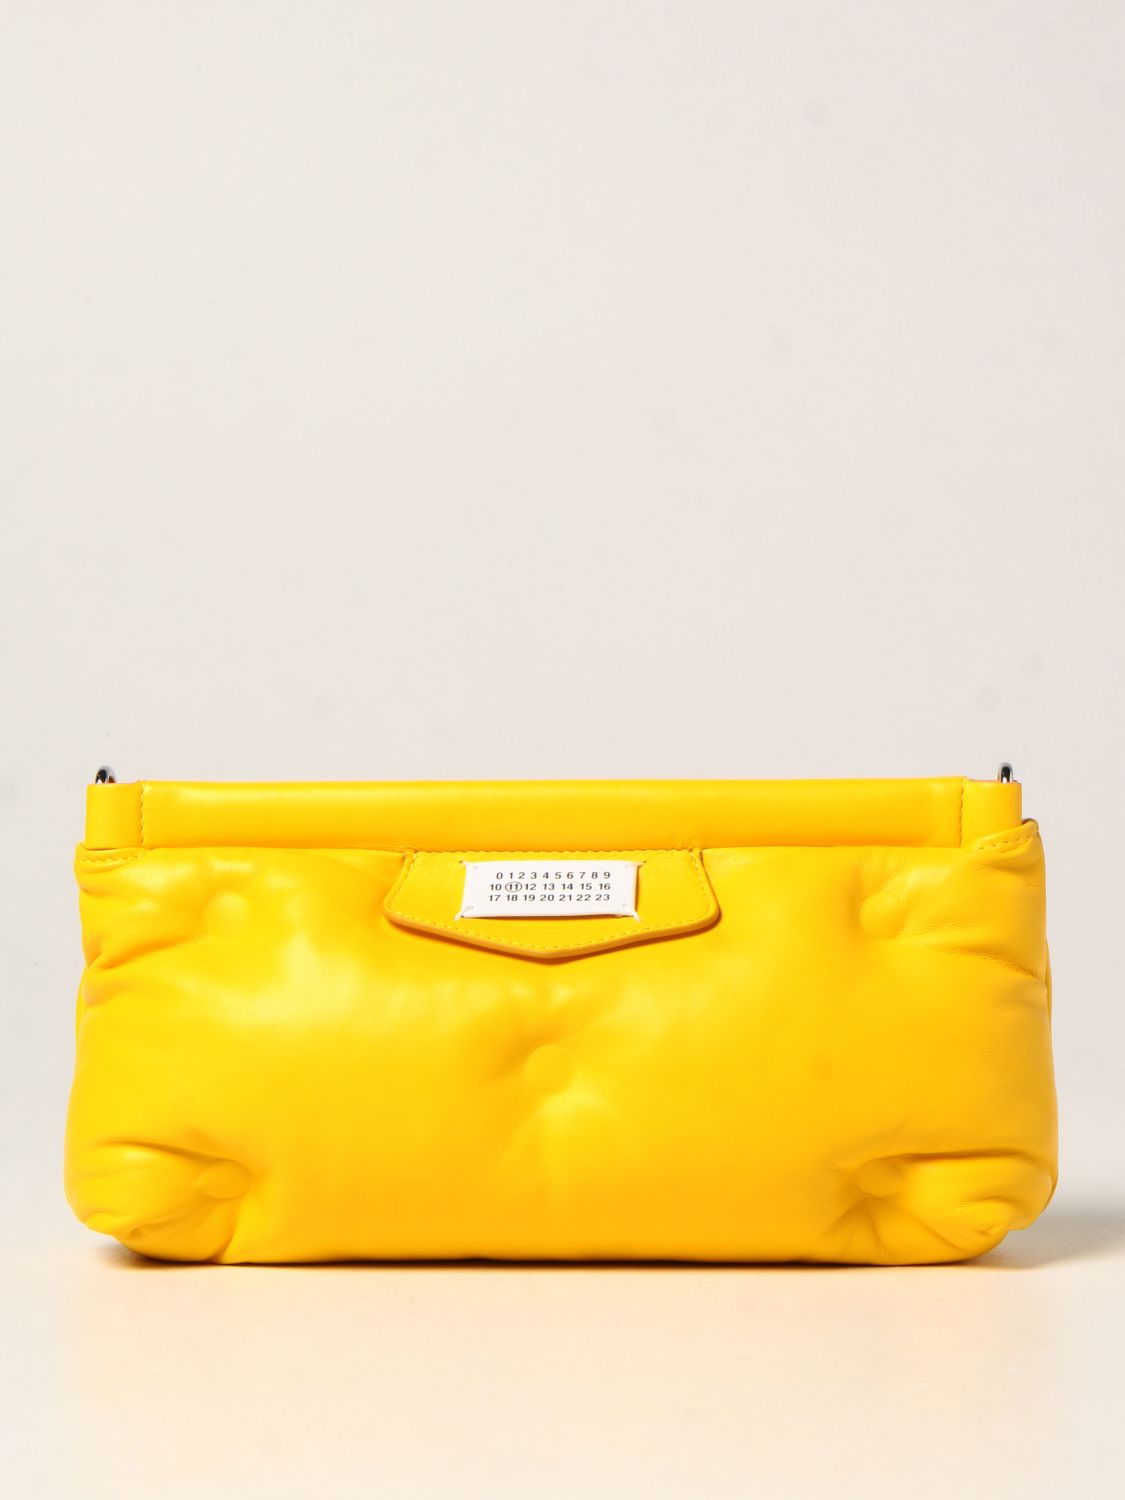 MAISON MARGIELA: Glam Slam padded leather bag - Yellow | Maison